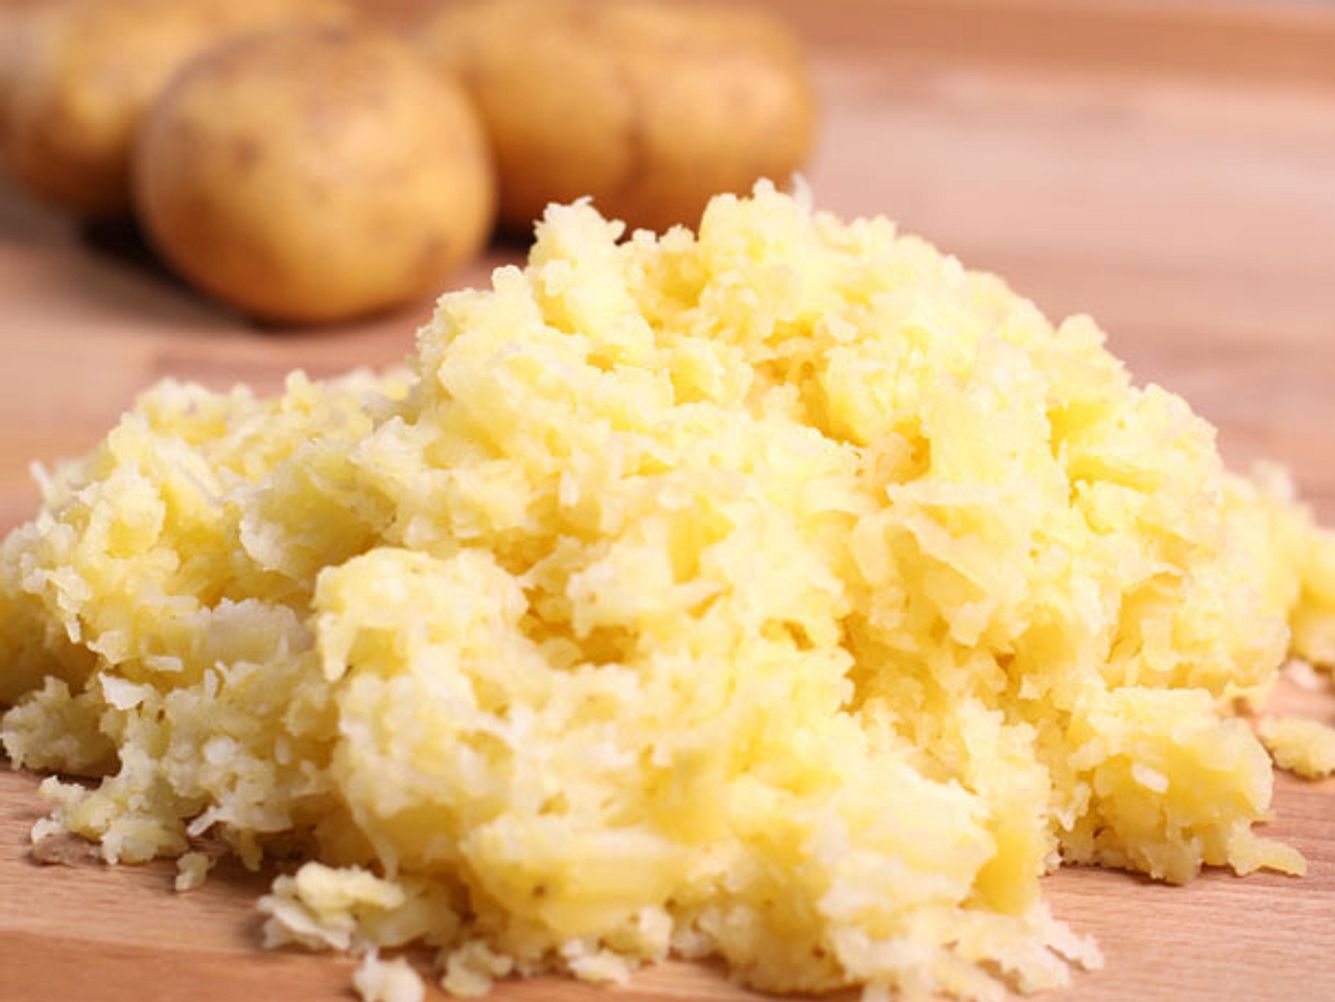 Kartoffeln sind ein super Hausmittel - so helen sie dir bei der Pflege von Gesundheit, Schönheit und Wäsche oder Küche.